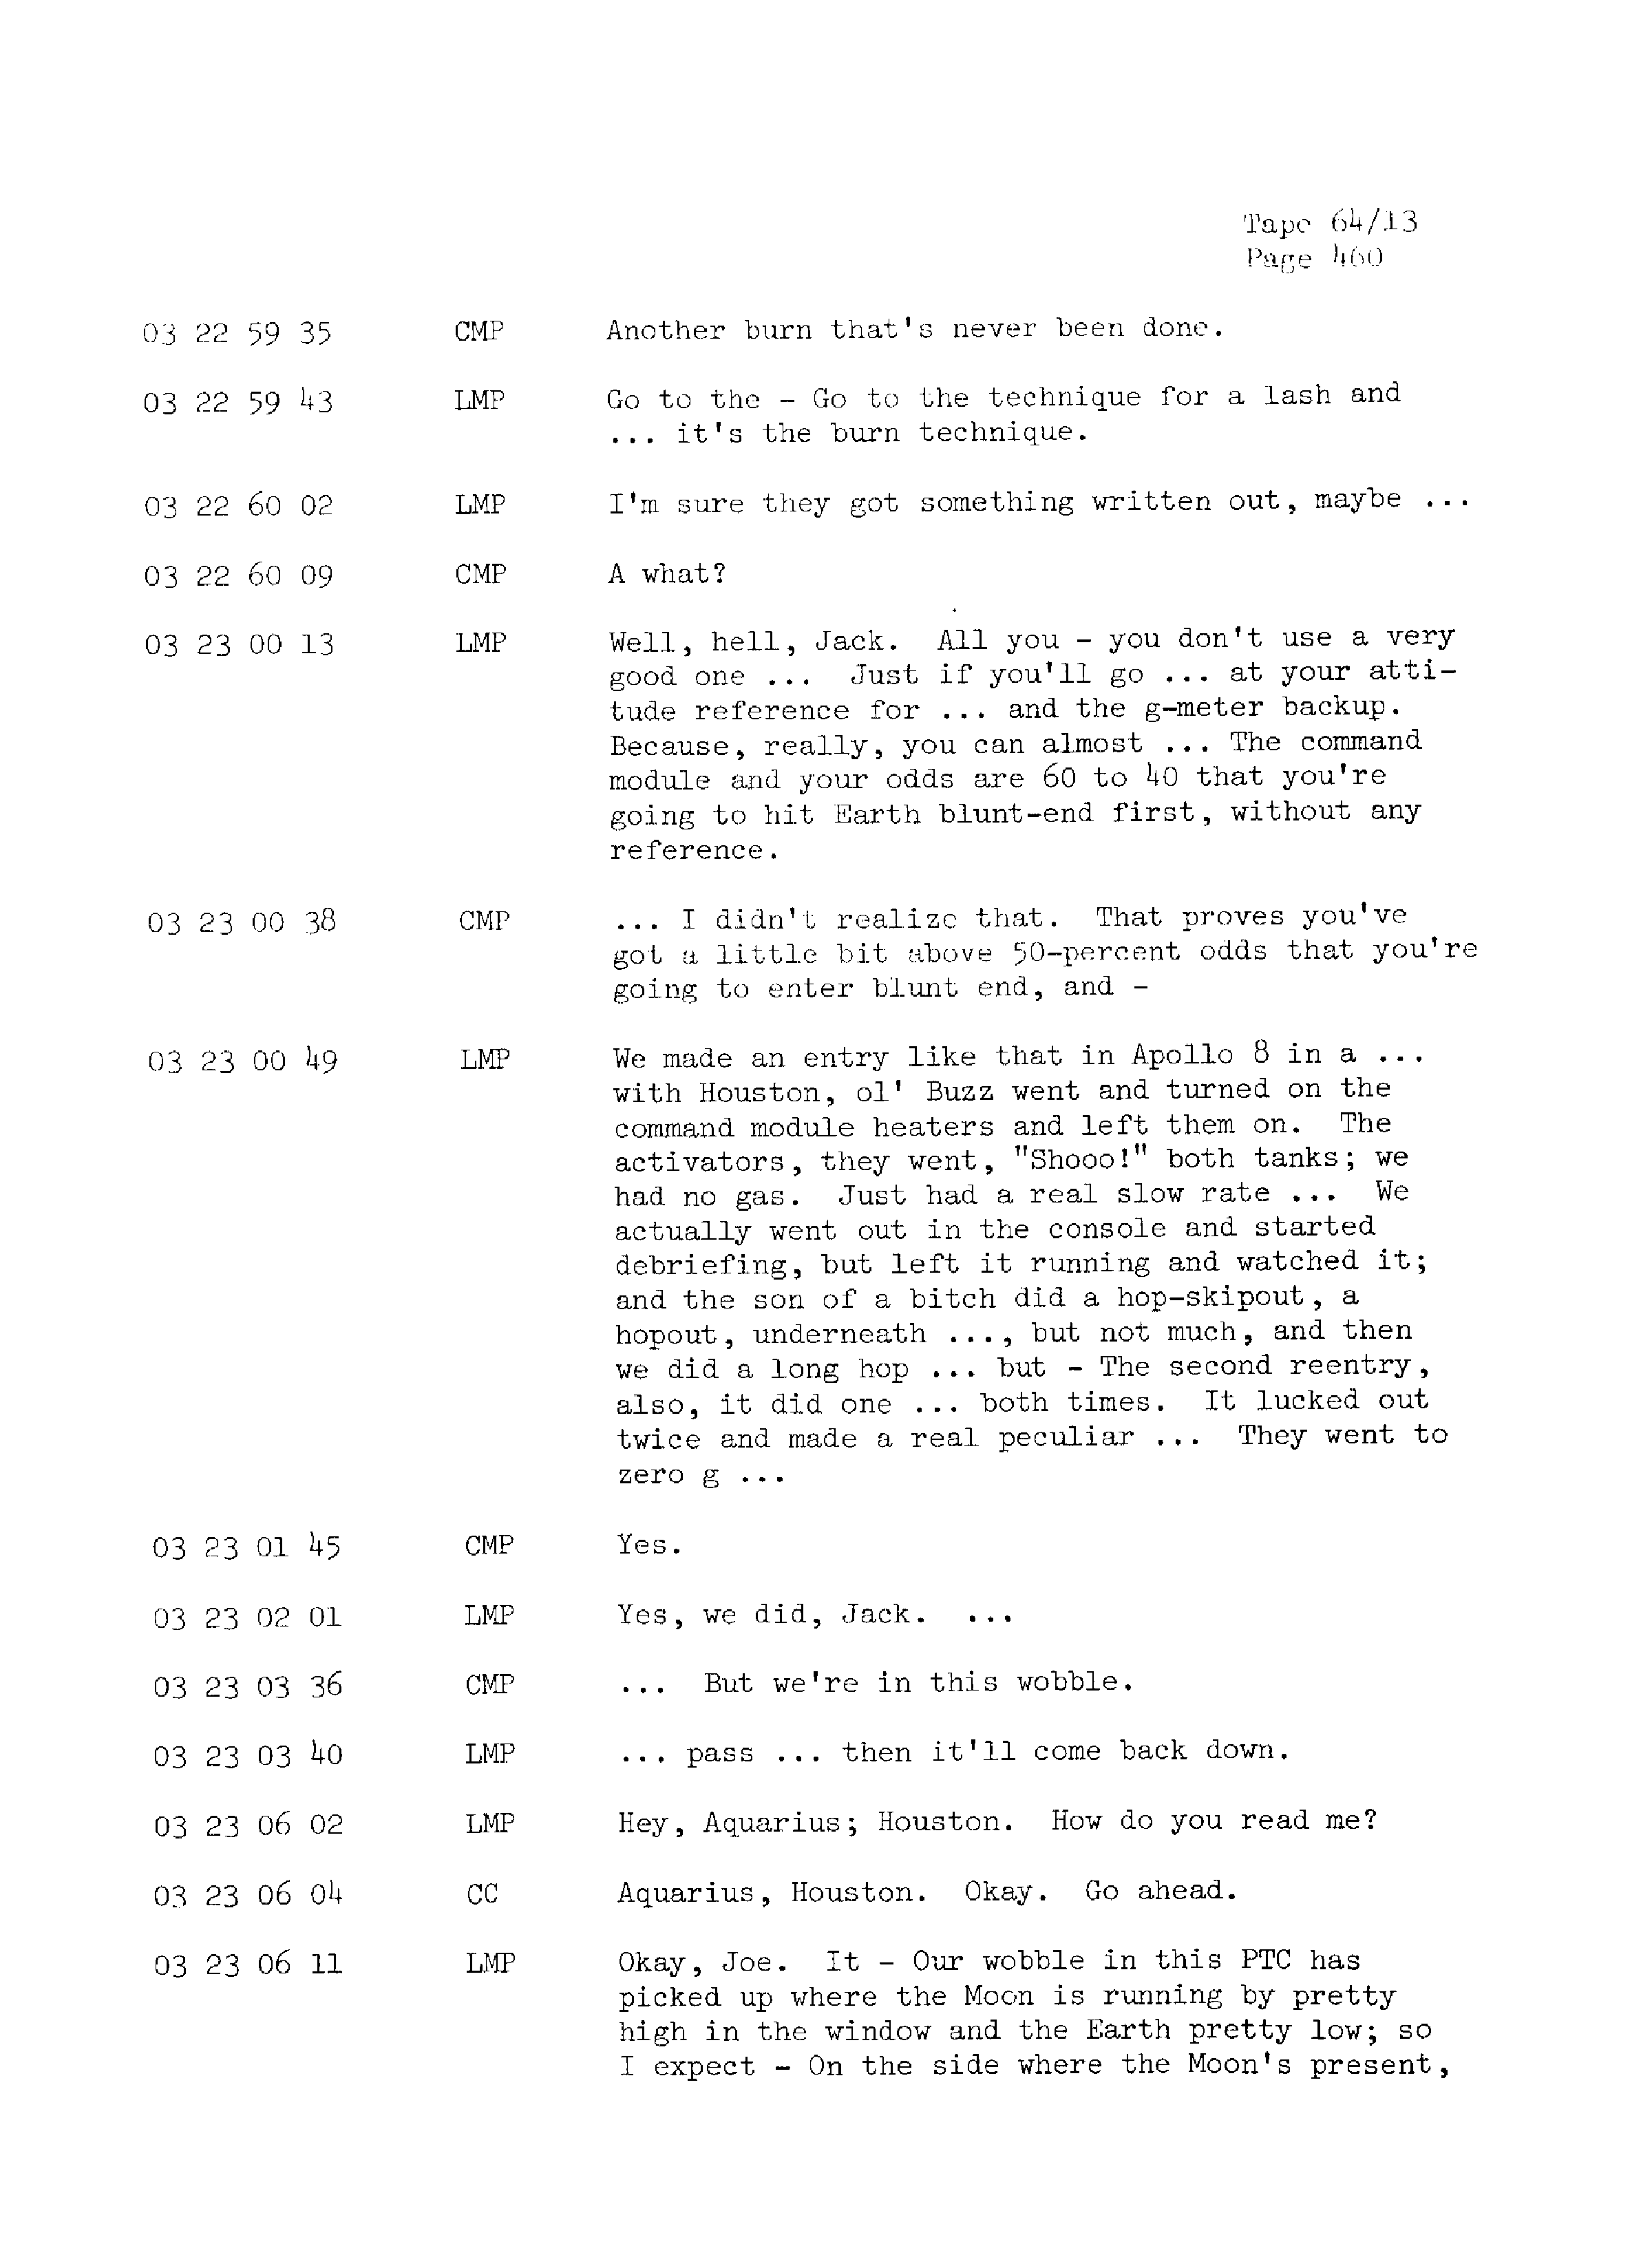 Page 467 of Apollo 13’s original transcript